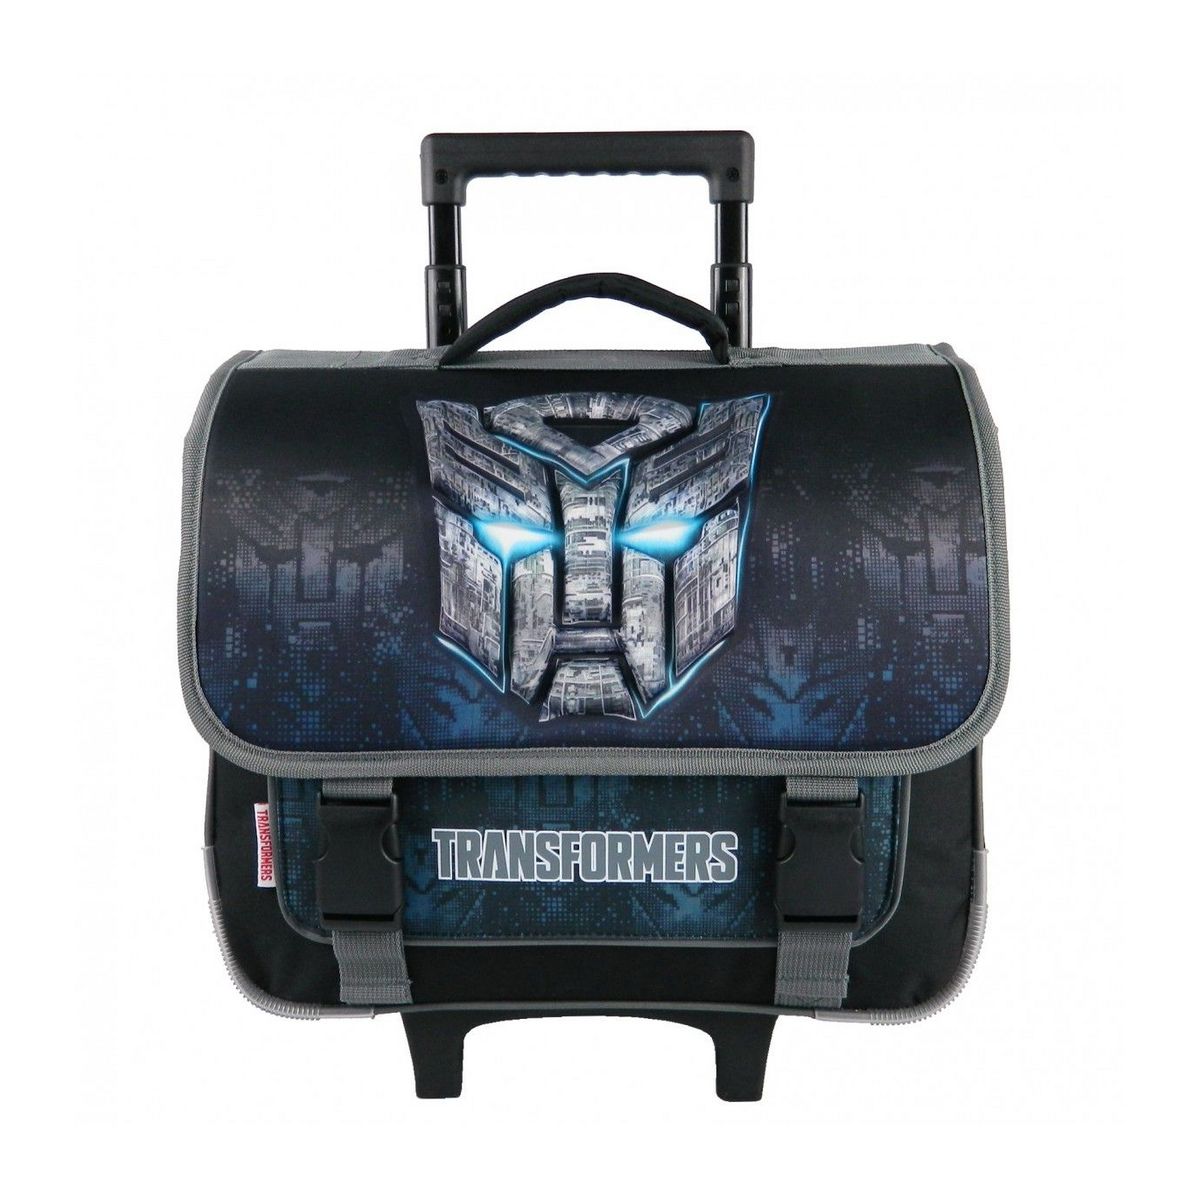 Bagtrotter Cartable à roulettes Transformers 38cm Noir